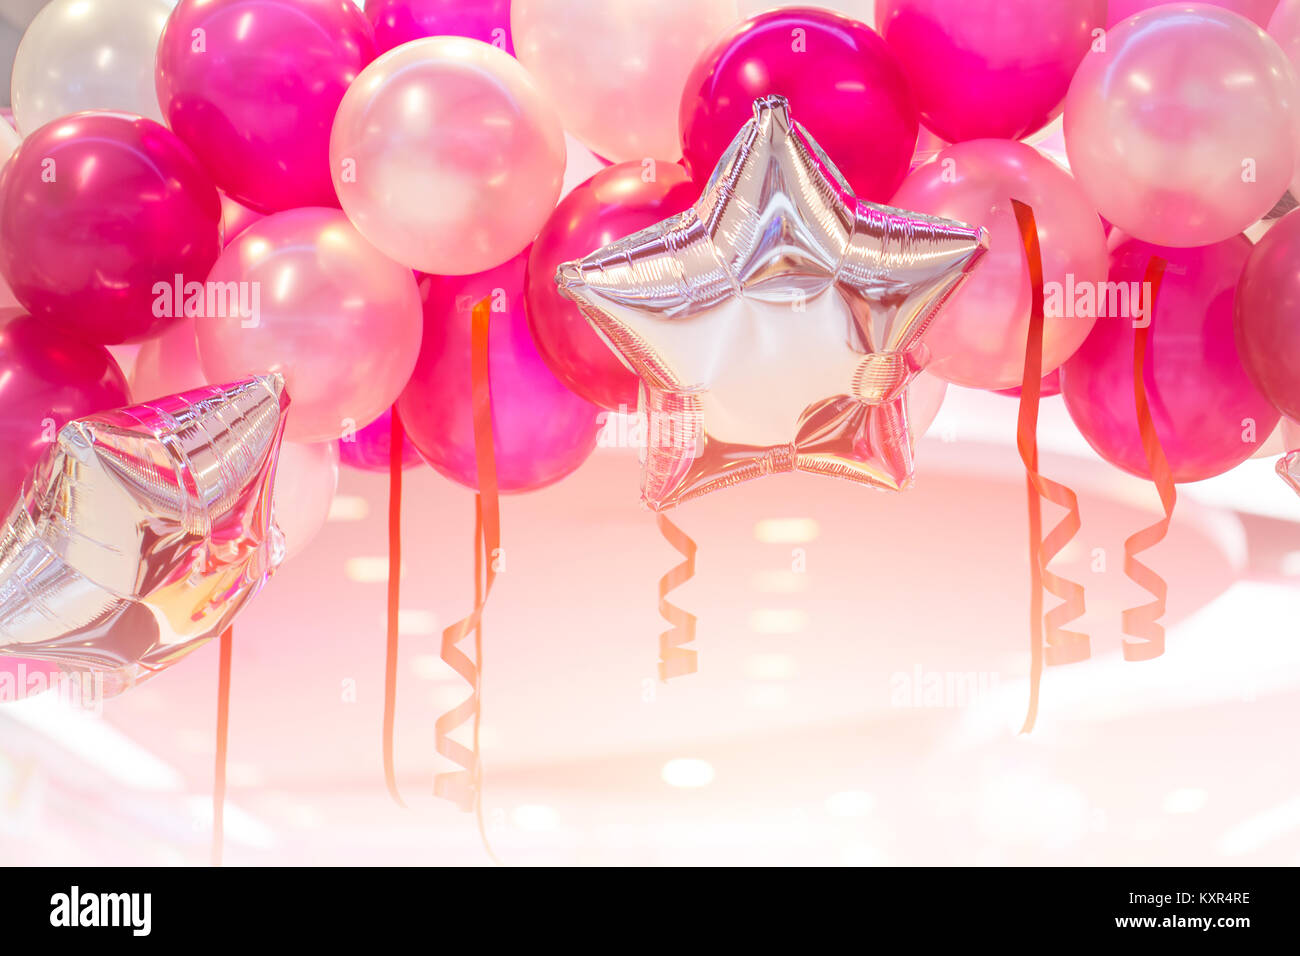 Nếu bạn yêu thích màu hồng, bạn không thể bỏ qua buổi tiệc đầy bóng bay Tết mới này. Hãy cùng nhau sôi động đón chào năm mới, đầy hy vọng và niềm vui bởi bầu không khí đầy hạnh phúc và yêu thương. Một buổi tiệc hoàn hảo với bầu không khí đầy sắc màu, tất cả trong một màu hồng đầy thú vị.